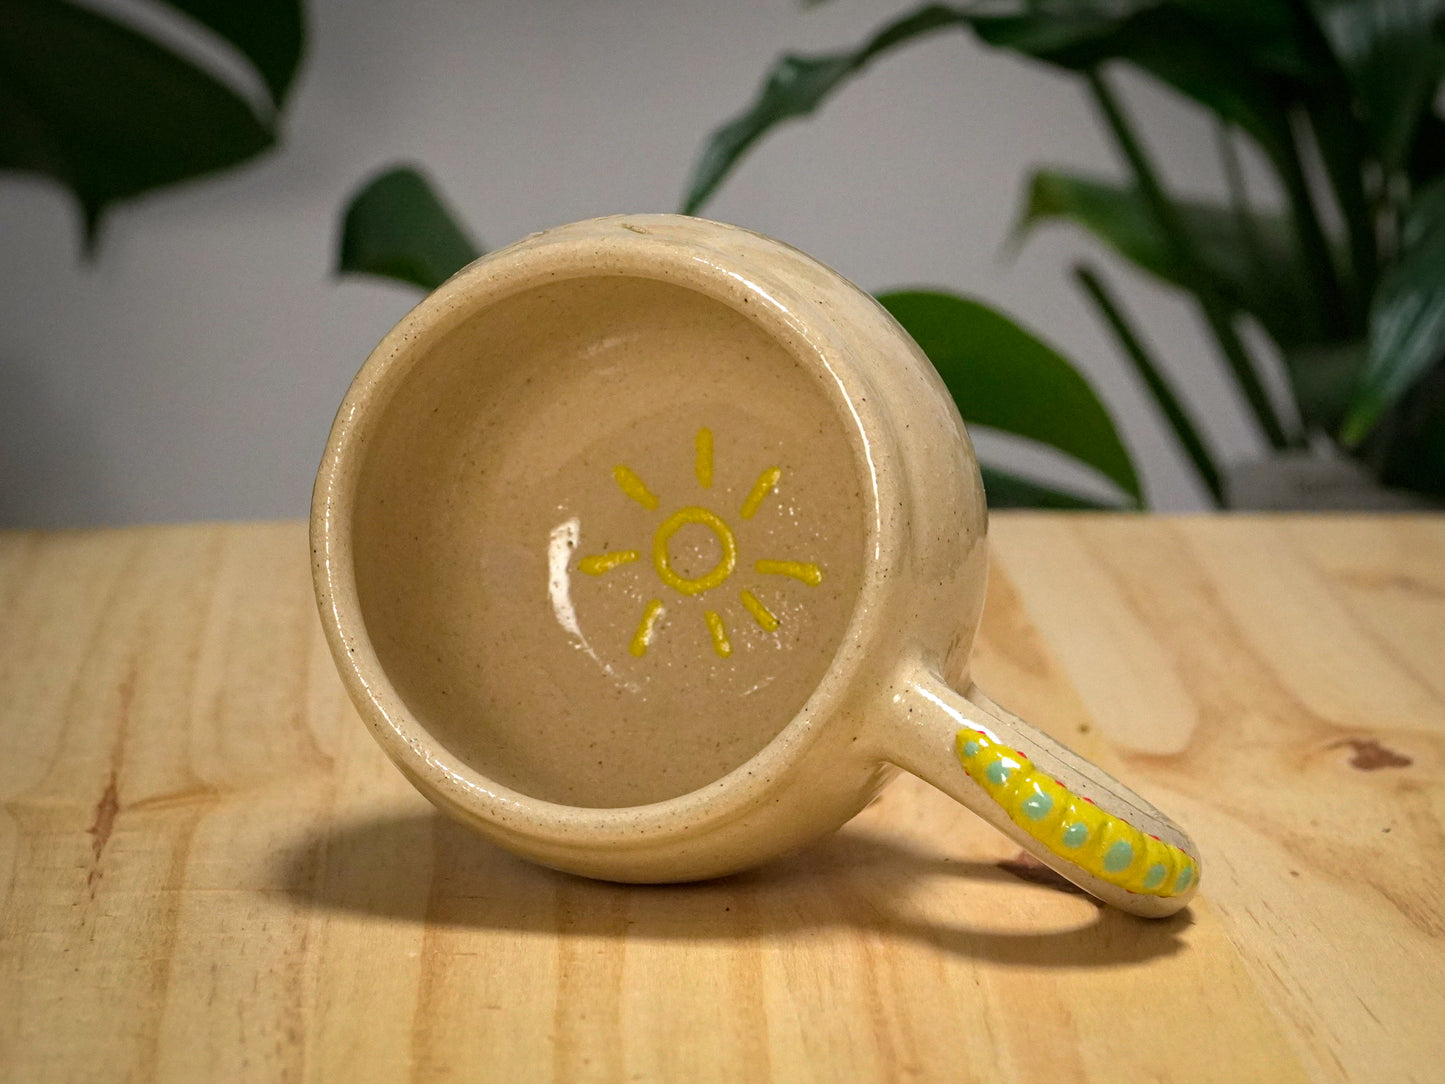 Ceramic Caterpillar Mug (Cream)